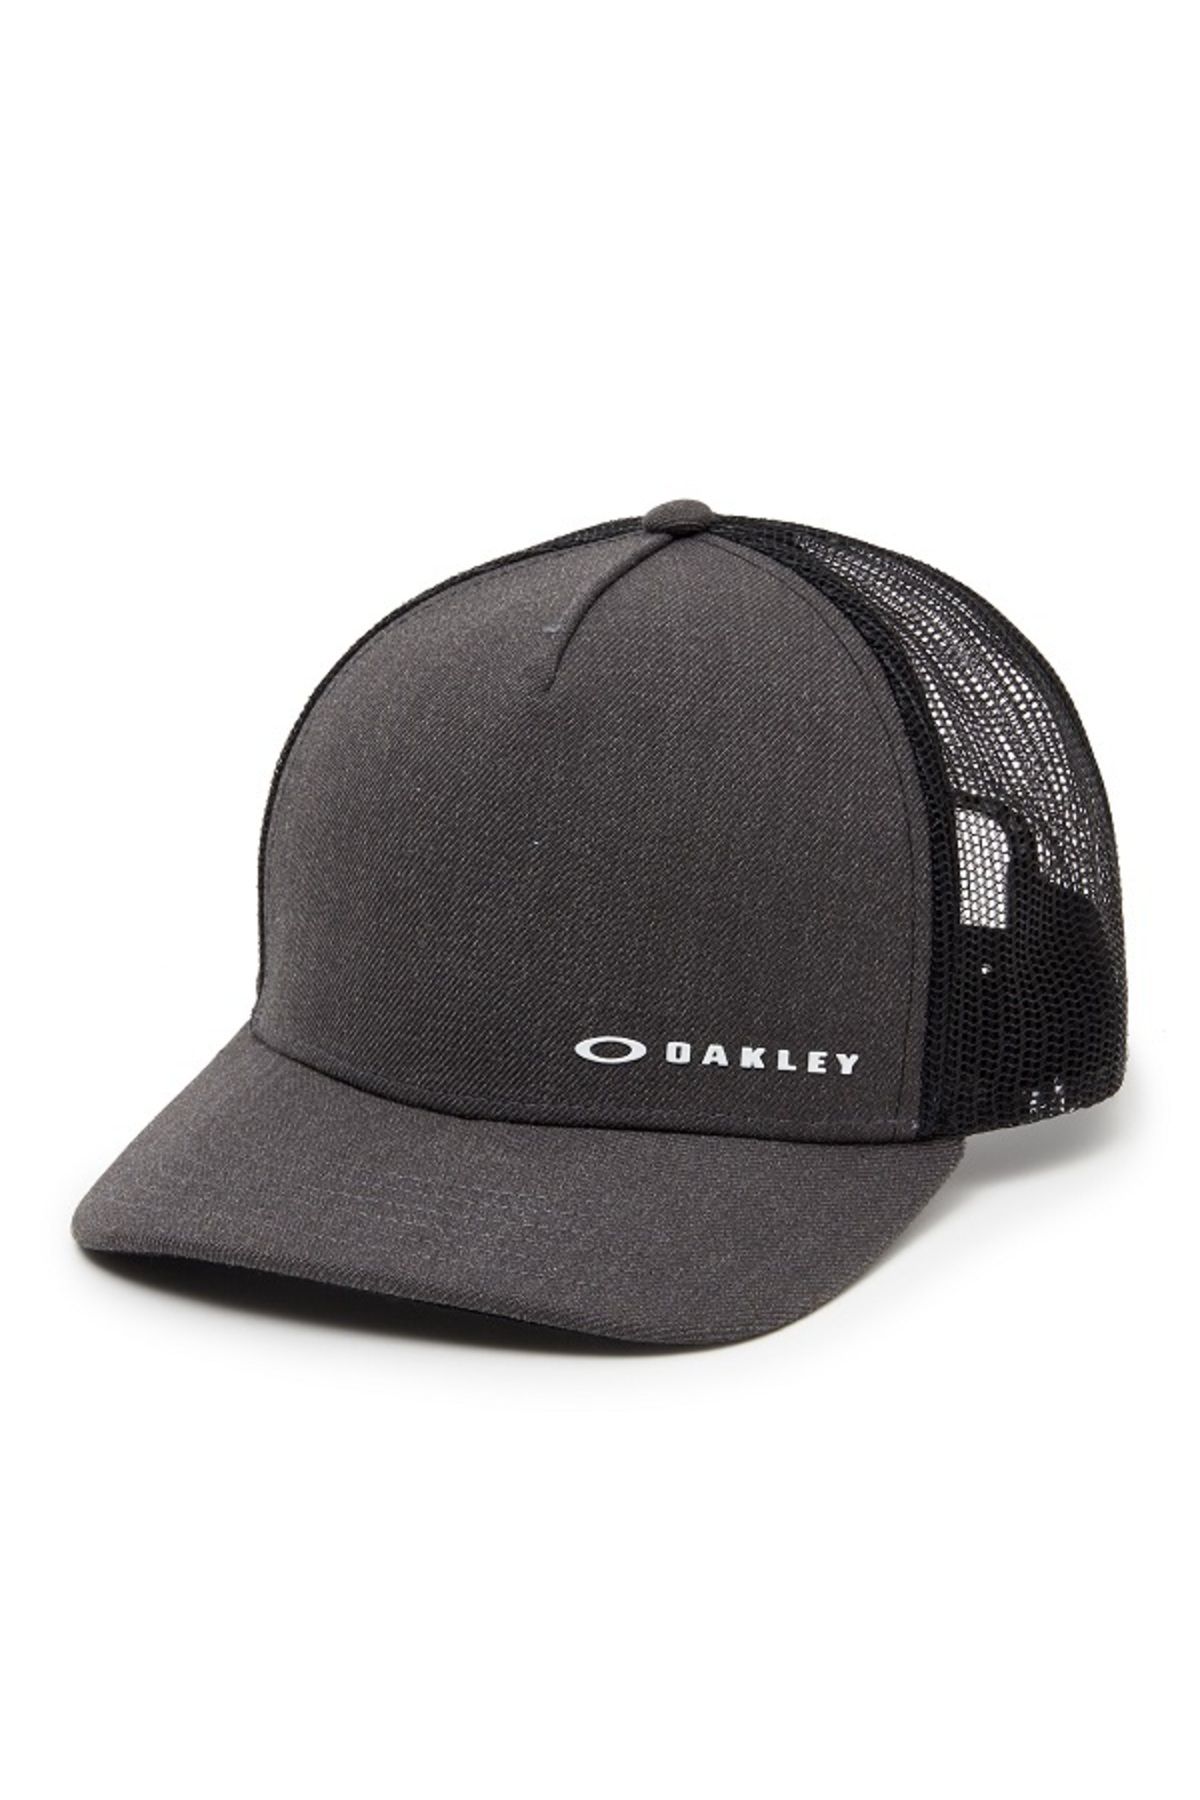 Oakley Gri Unisex Şapka Oakley Chalten Cap Jet Black Arkası Fileli Arkadan Çıtçıtlı